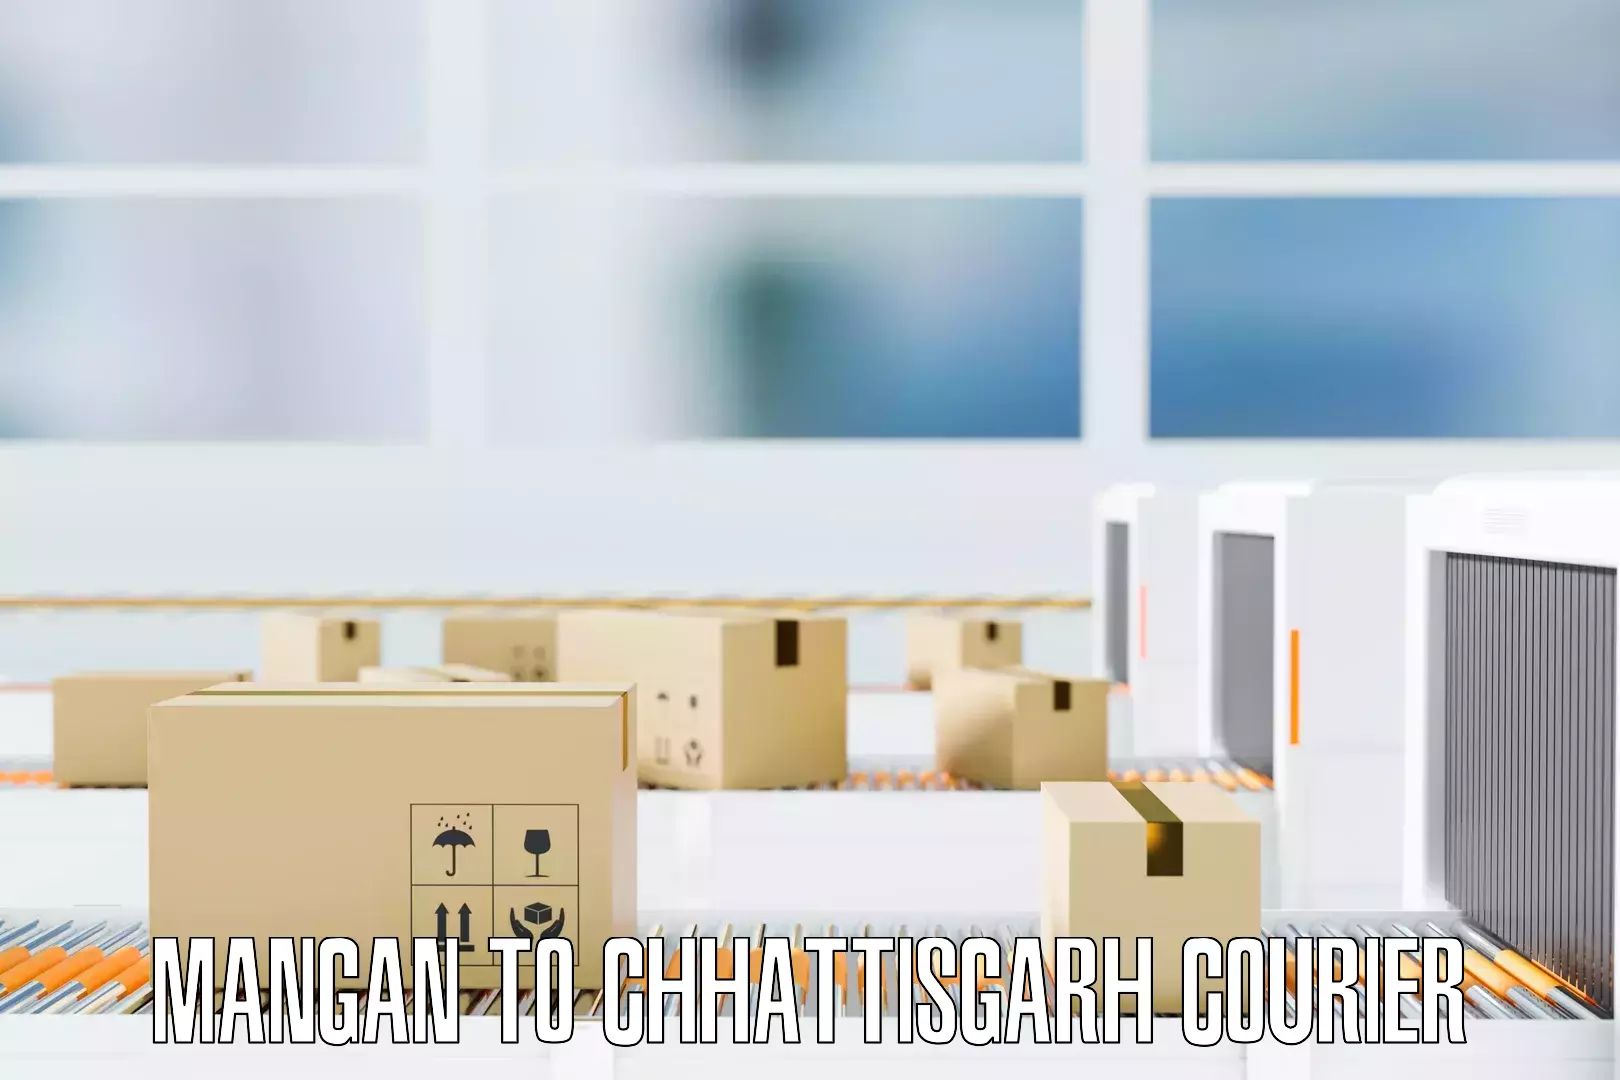 Furniture moving experts Mangan to Chhattisgarh